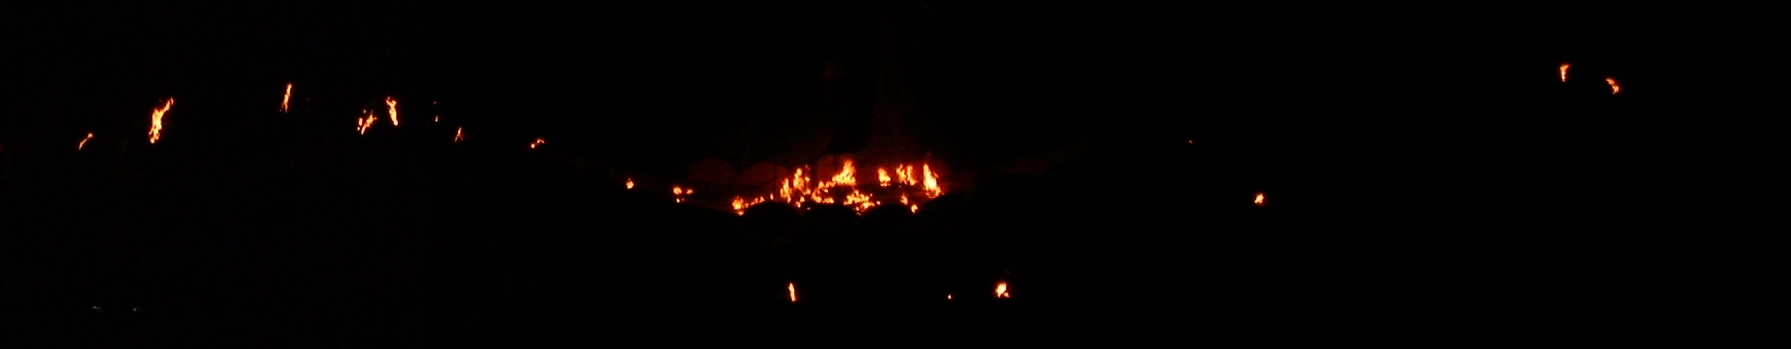 Amlwch 2004 (Gorm) burning boat 1.jpg